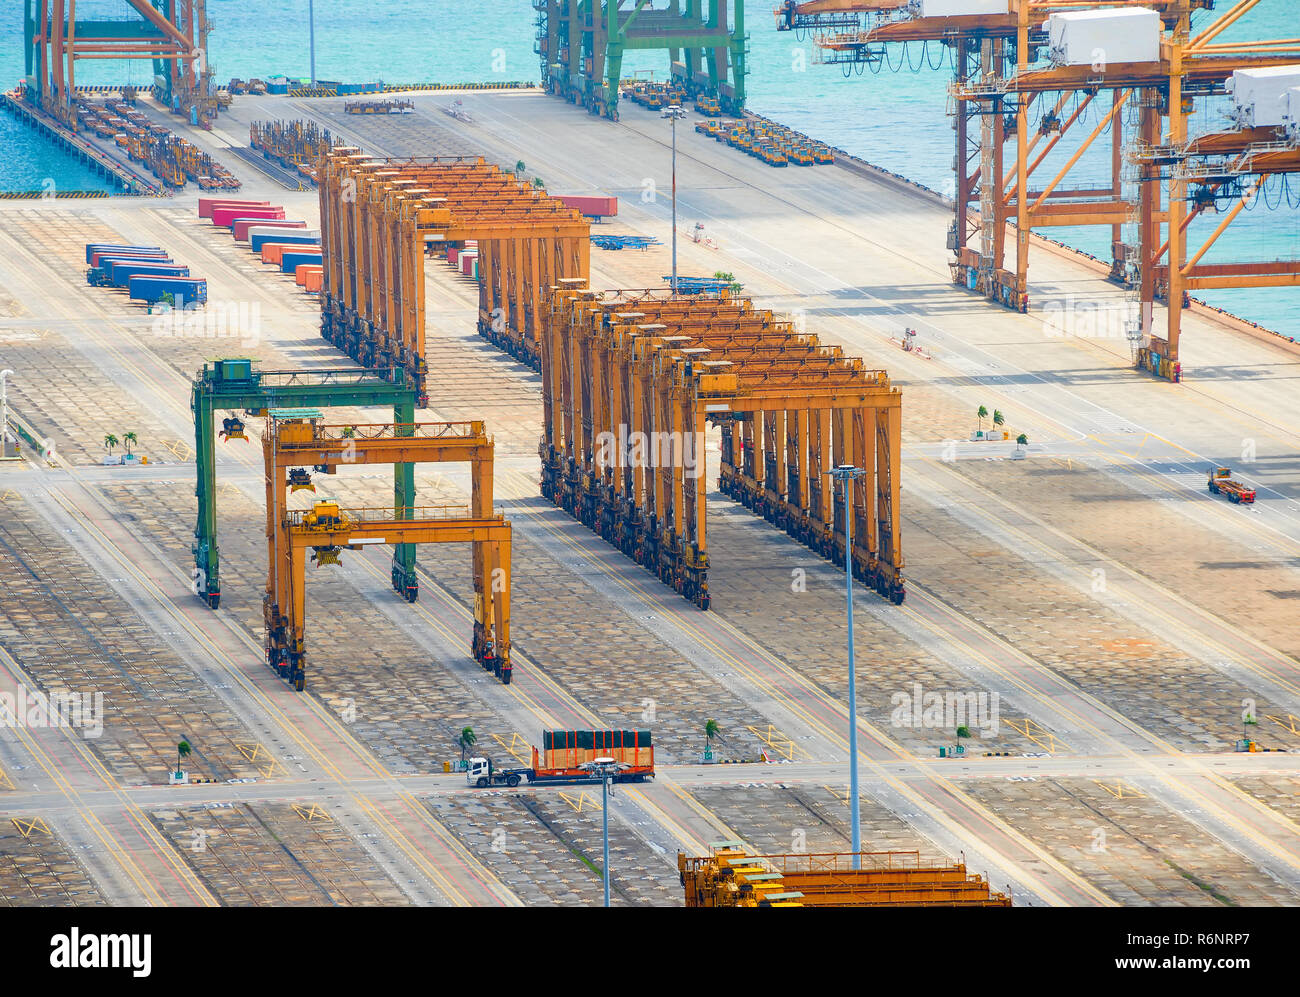 Attrezzature industriali, nolo gru e costruzioni in acciaio sul molo a vuoto spedizione cargo del porto di Singapore, vista aerea Foto Stock